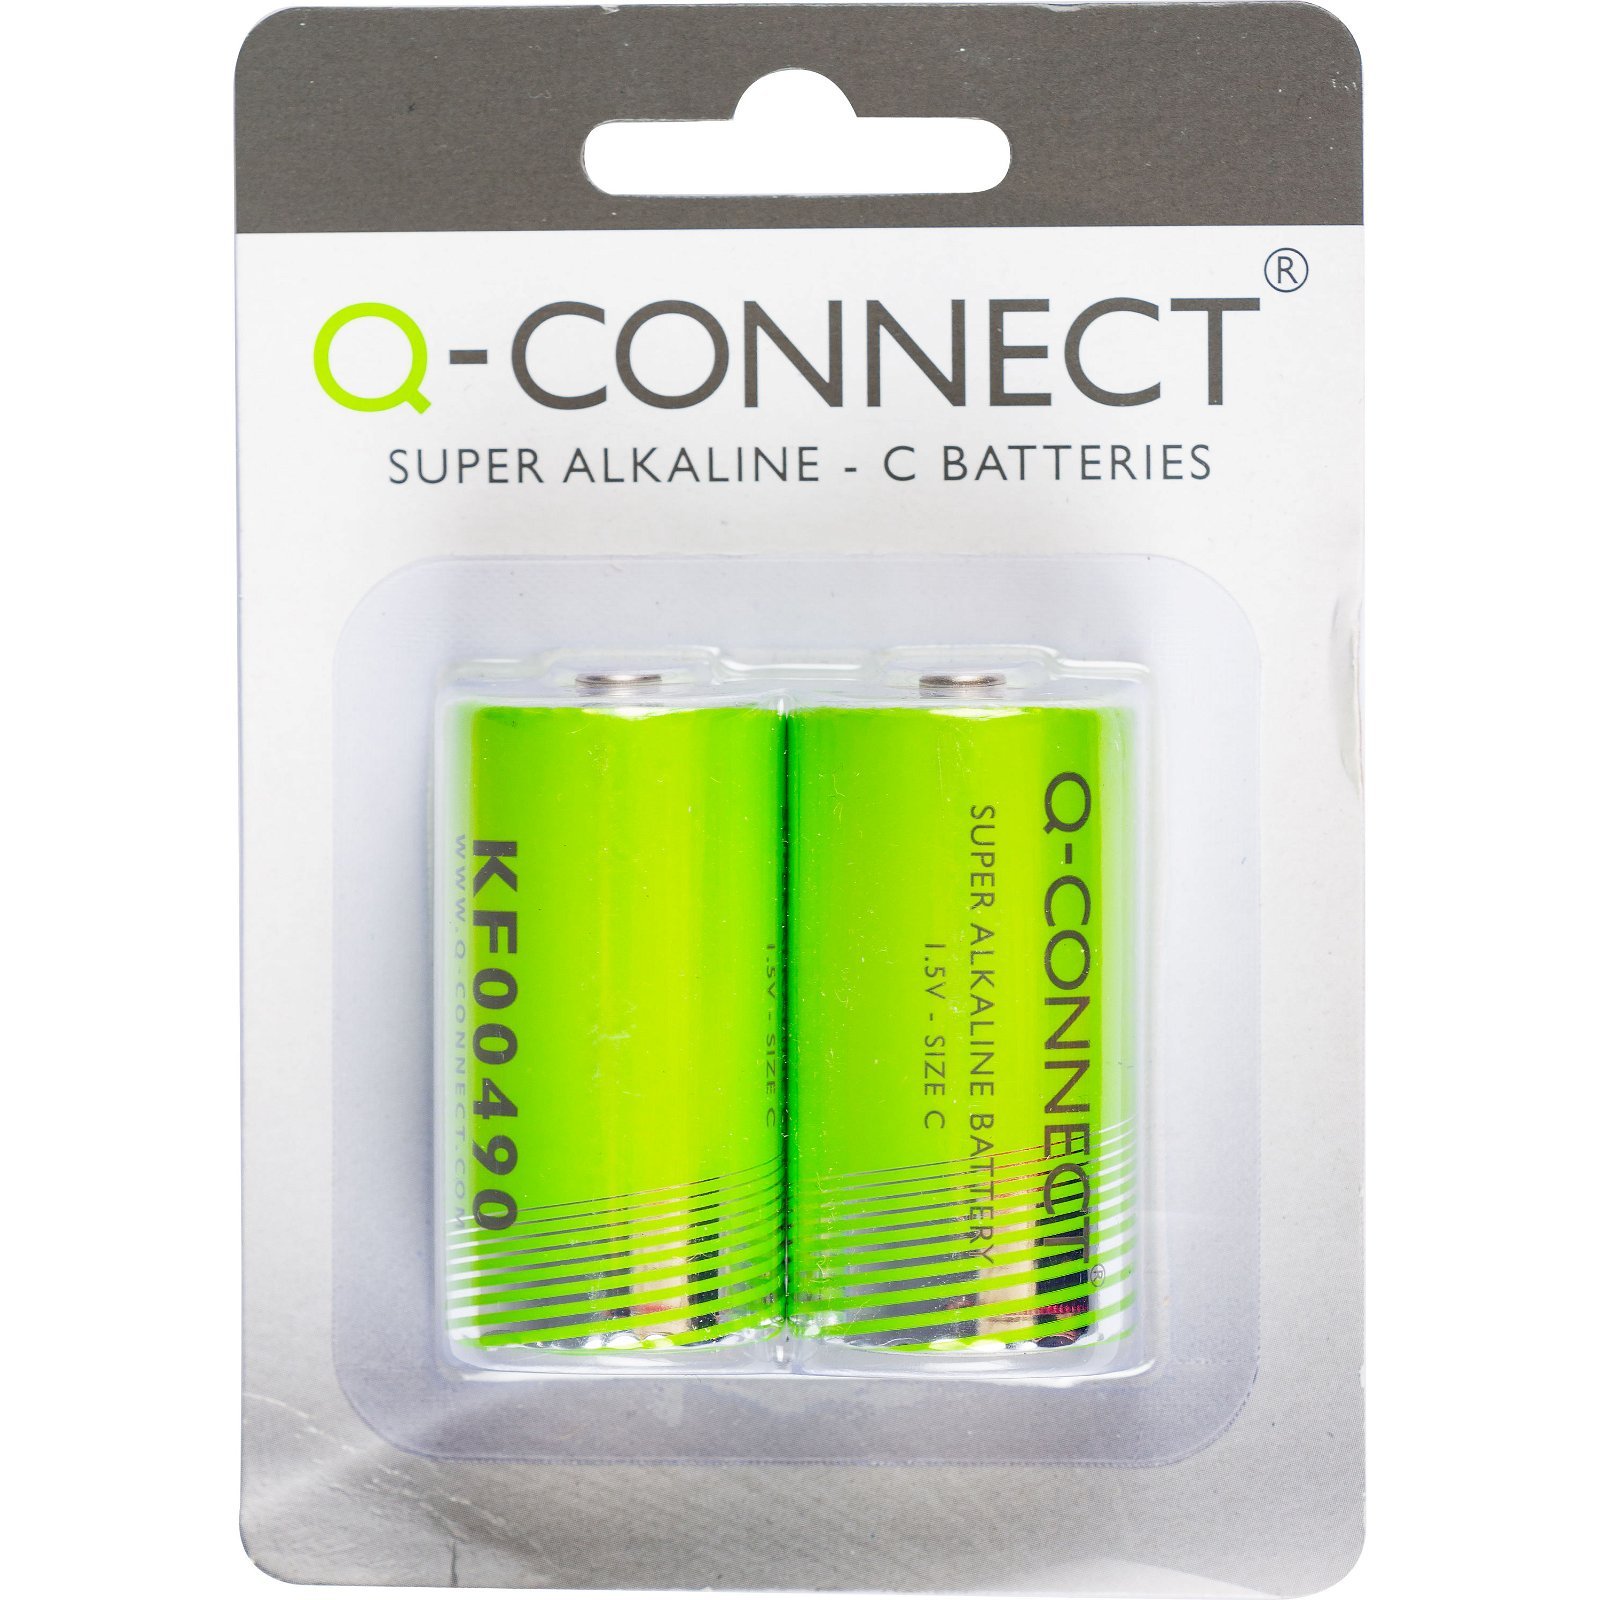 Q-connect C batteri C 1.5 v 2 stk